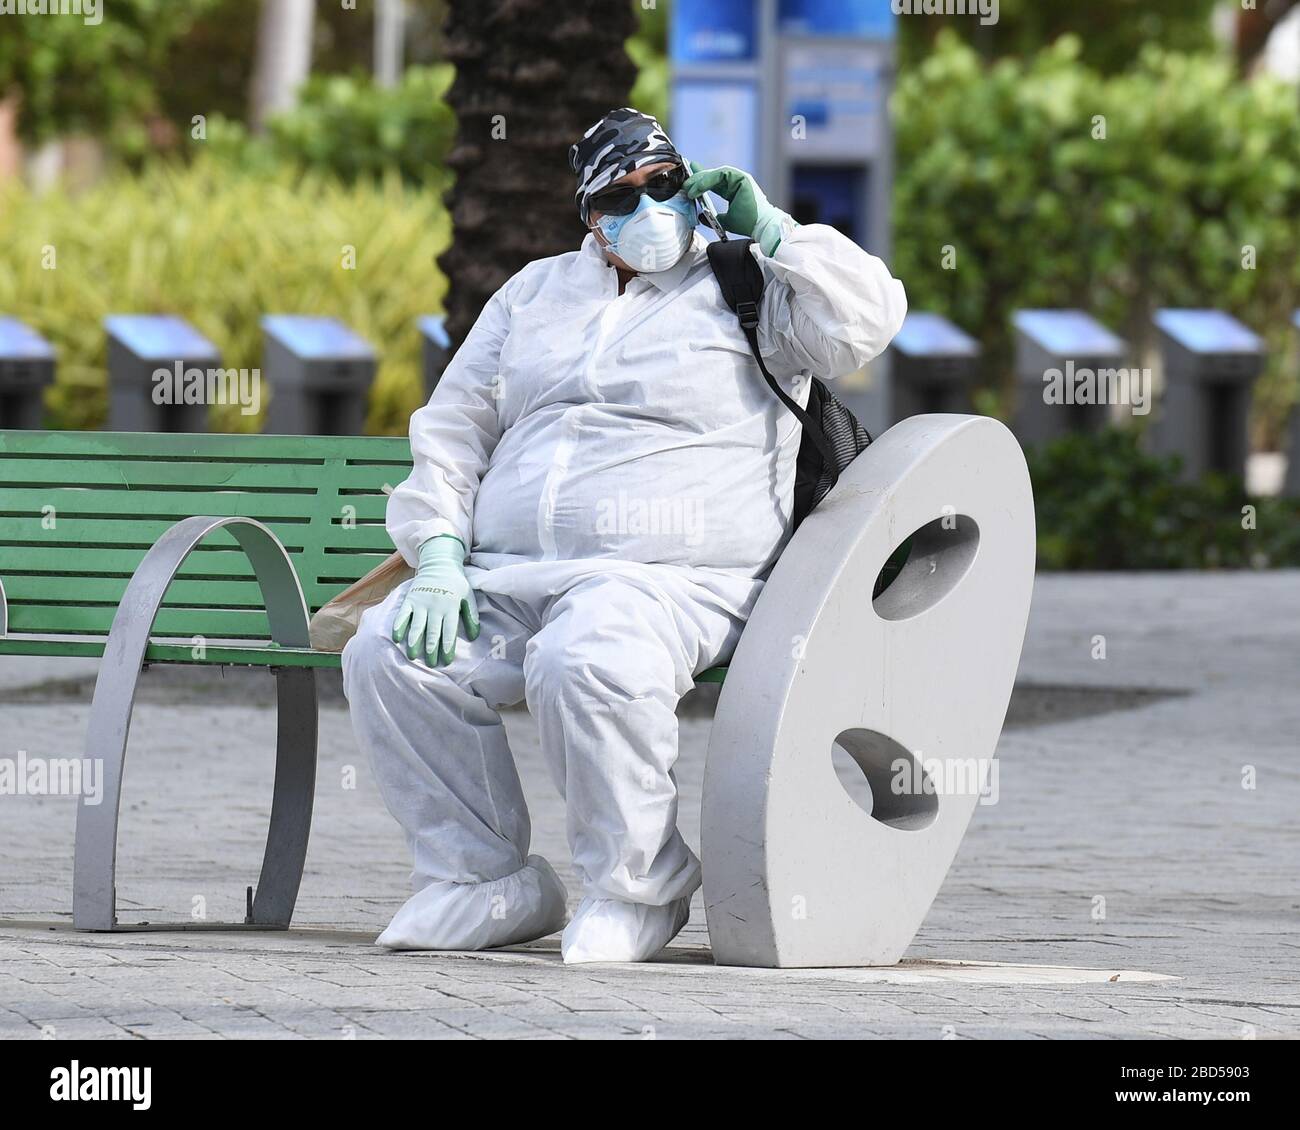 Miami Beach, Floride, États-Unis. 06 avril 2020. Une femme portant un costume hazmat va au sujet de ses activités quotidiennes sur South Beach lors de la pandémie de Coronavirus COVID-19 le 06 avril 2020 à Miami Beach, en Floride. Crédit: Mpi04/Media Punch/Alay Live News Banque D'Images